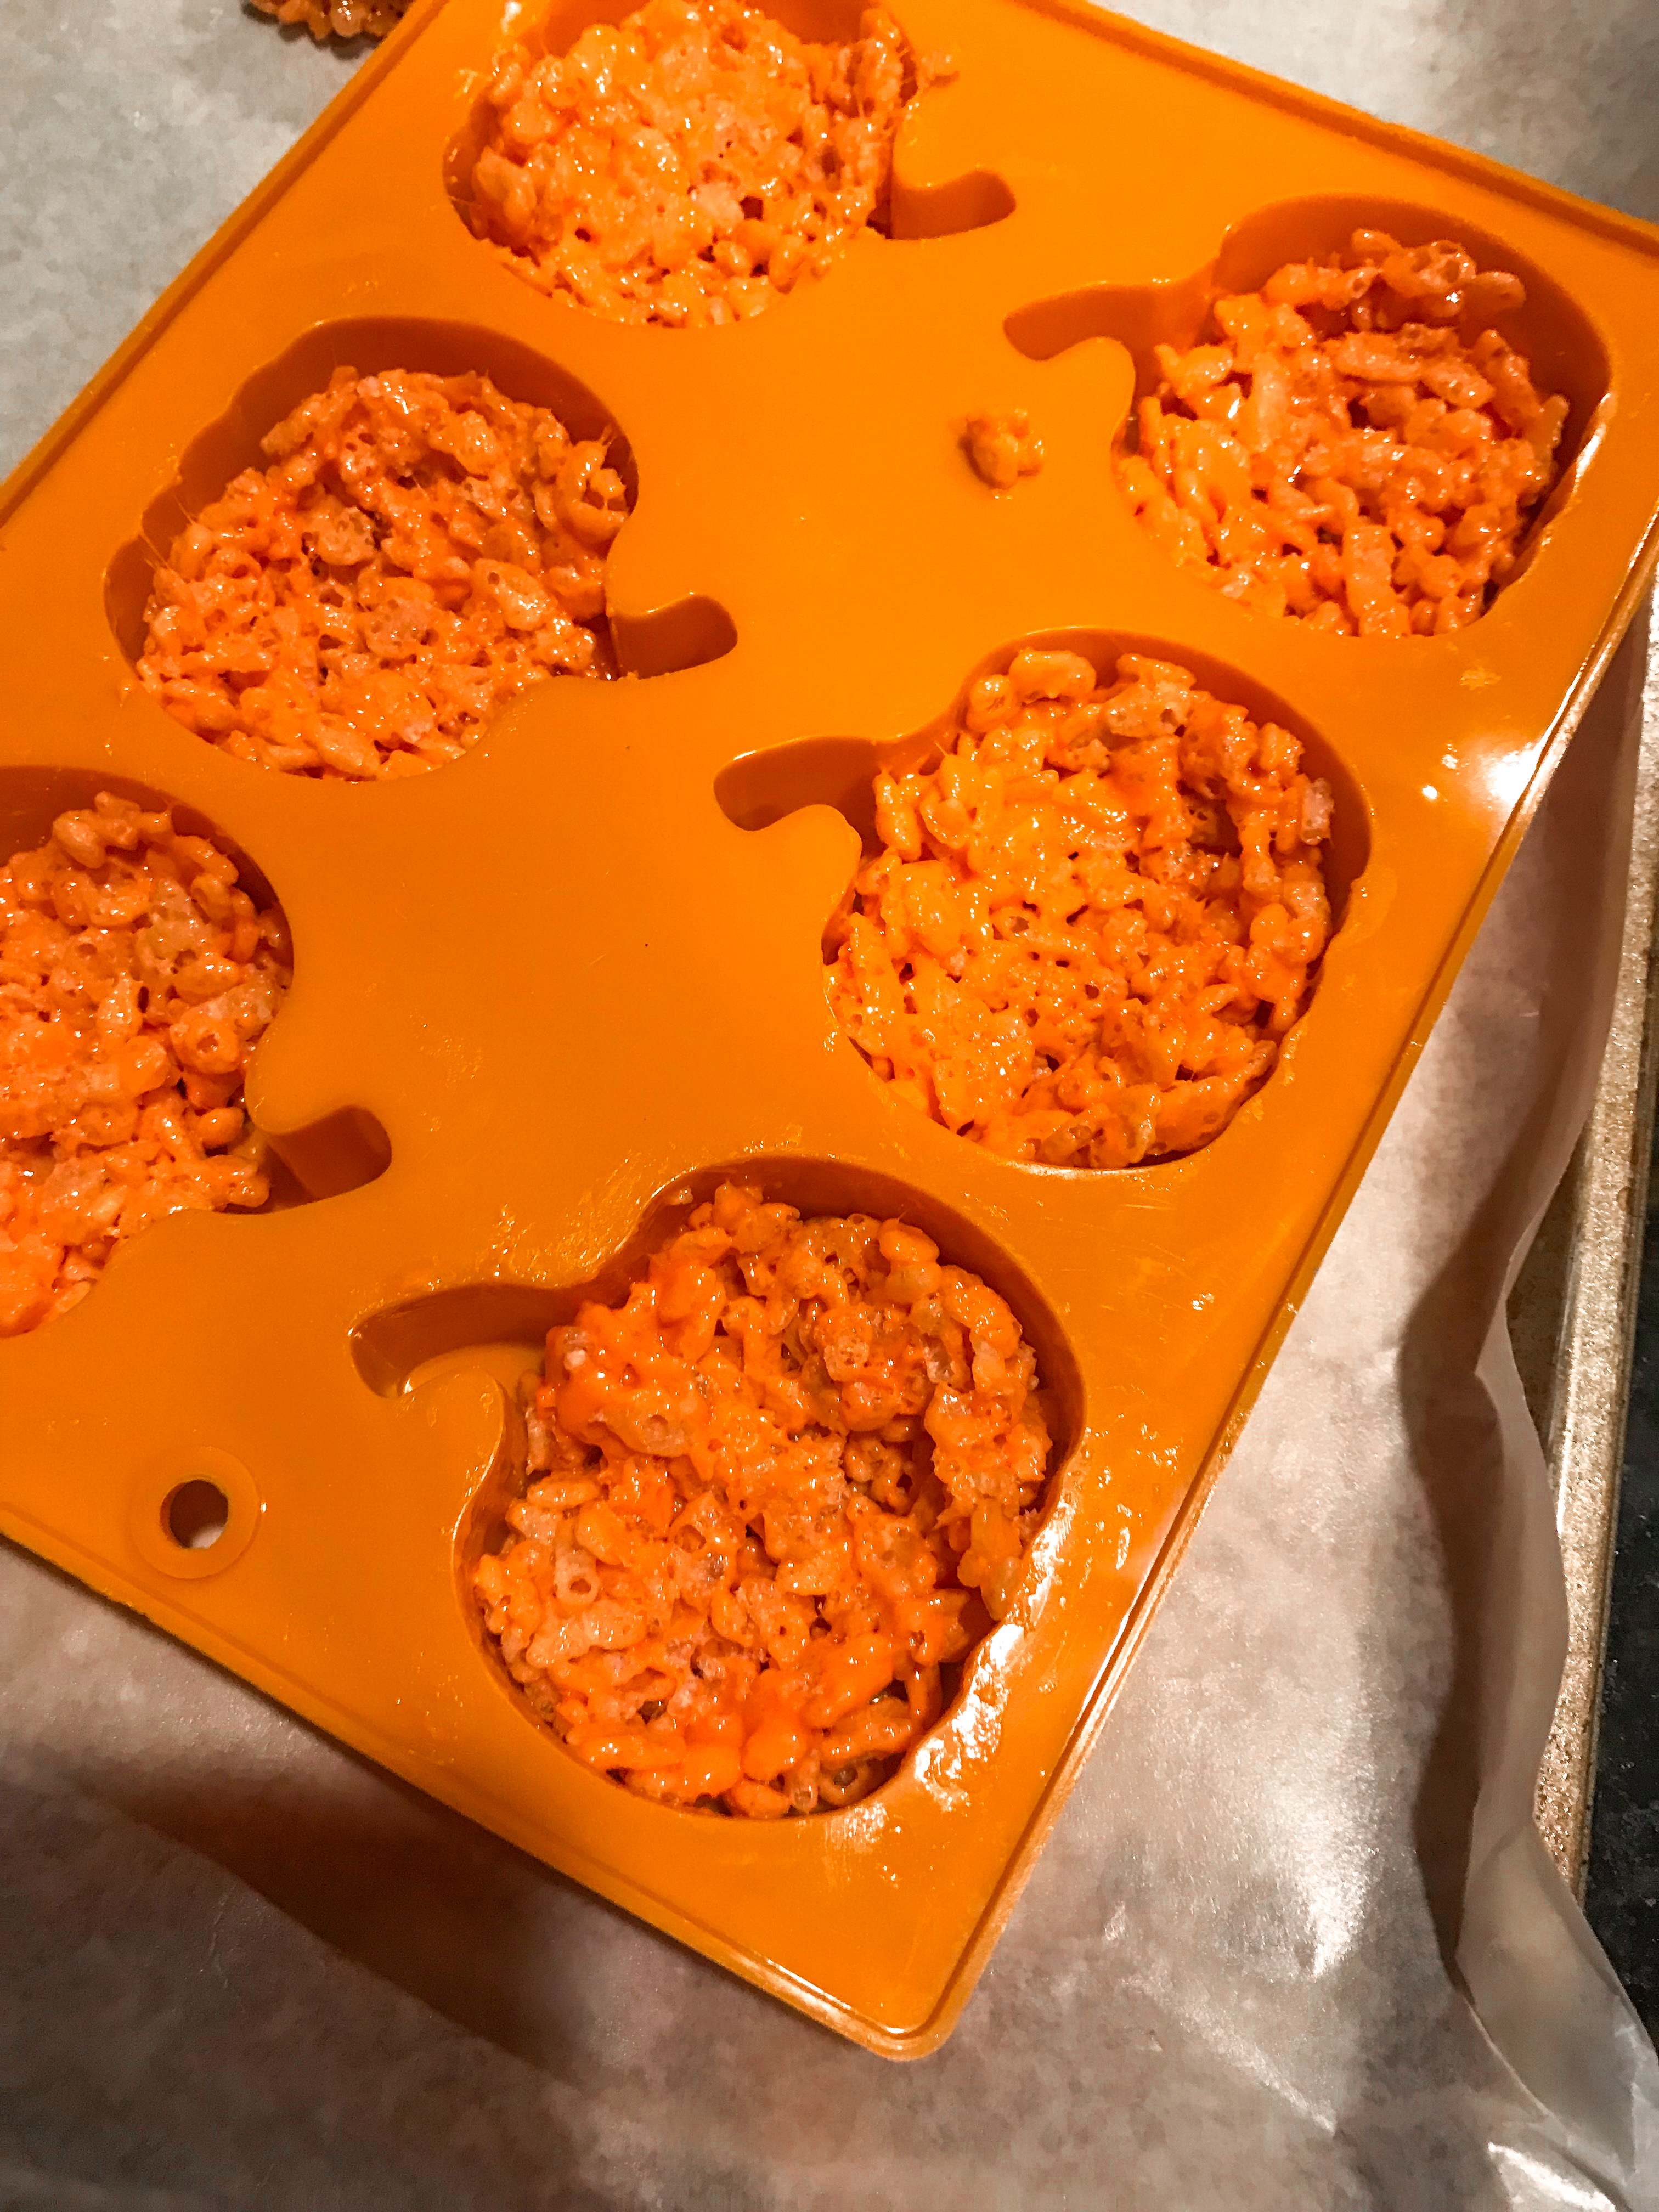 Orange rice krispie mix being pressed into a pumpkin mold.